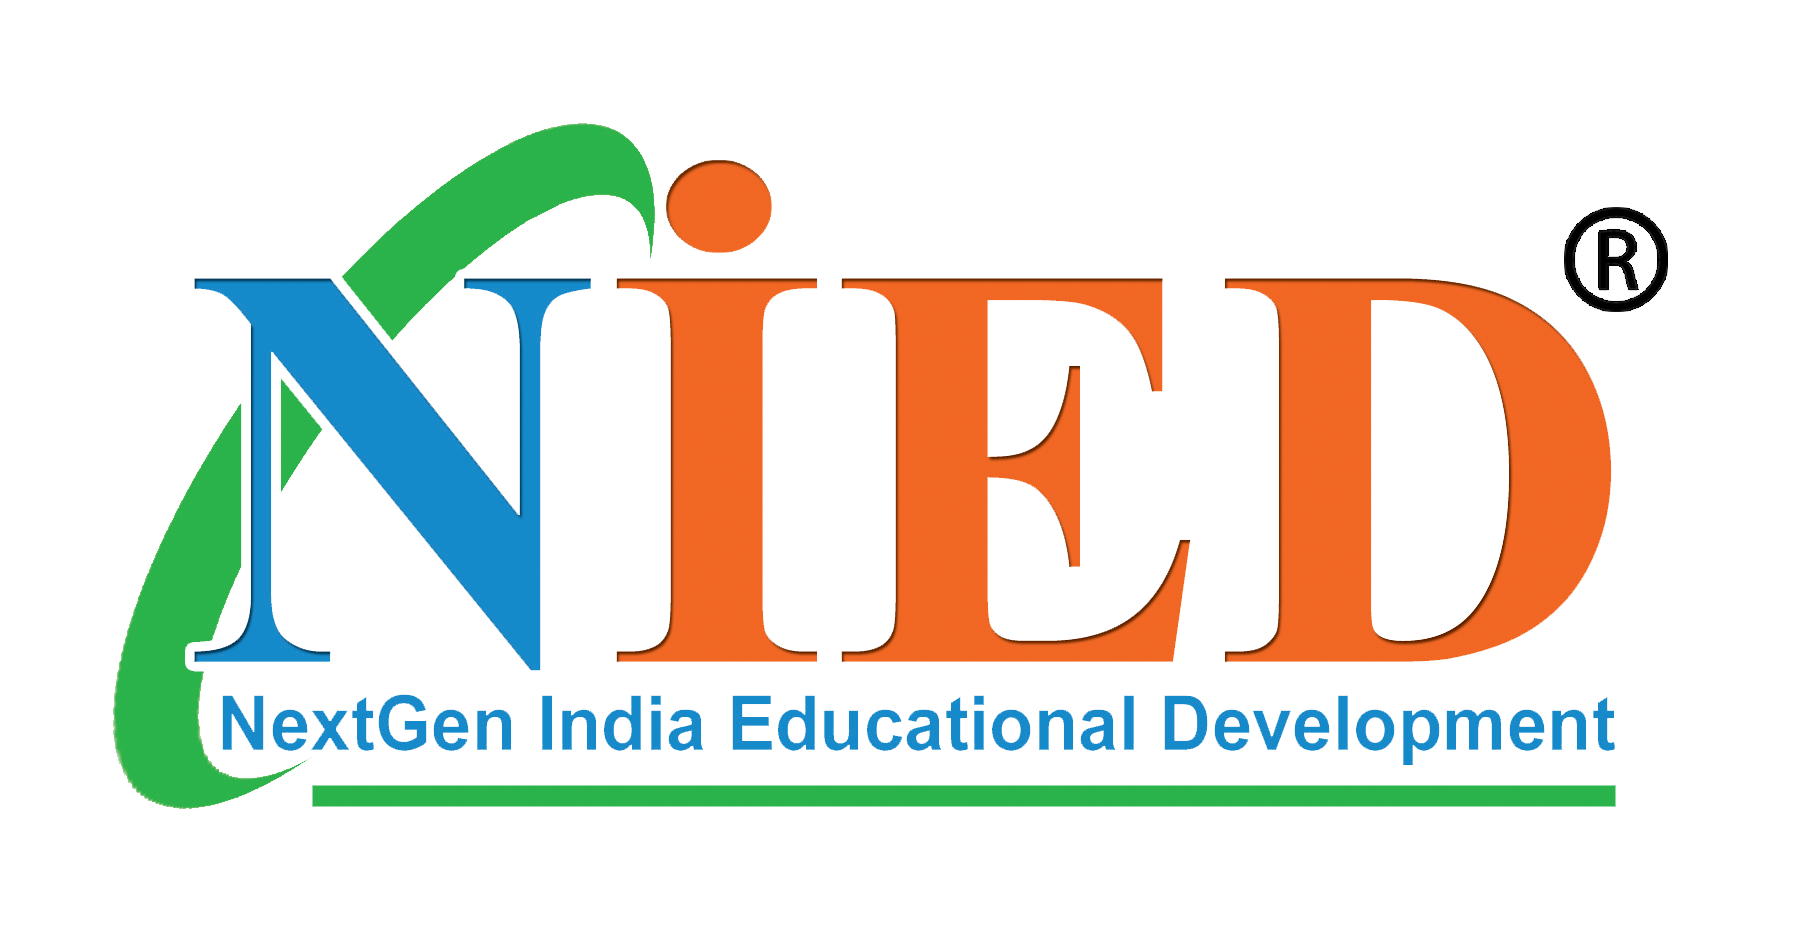 NextGen India Educational Development